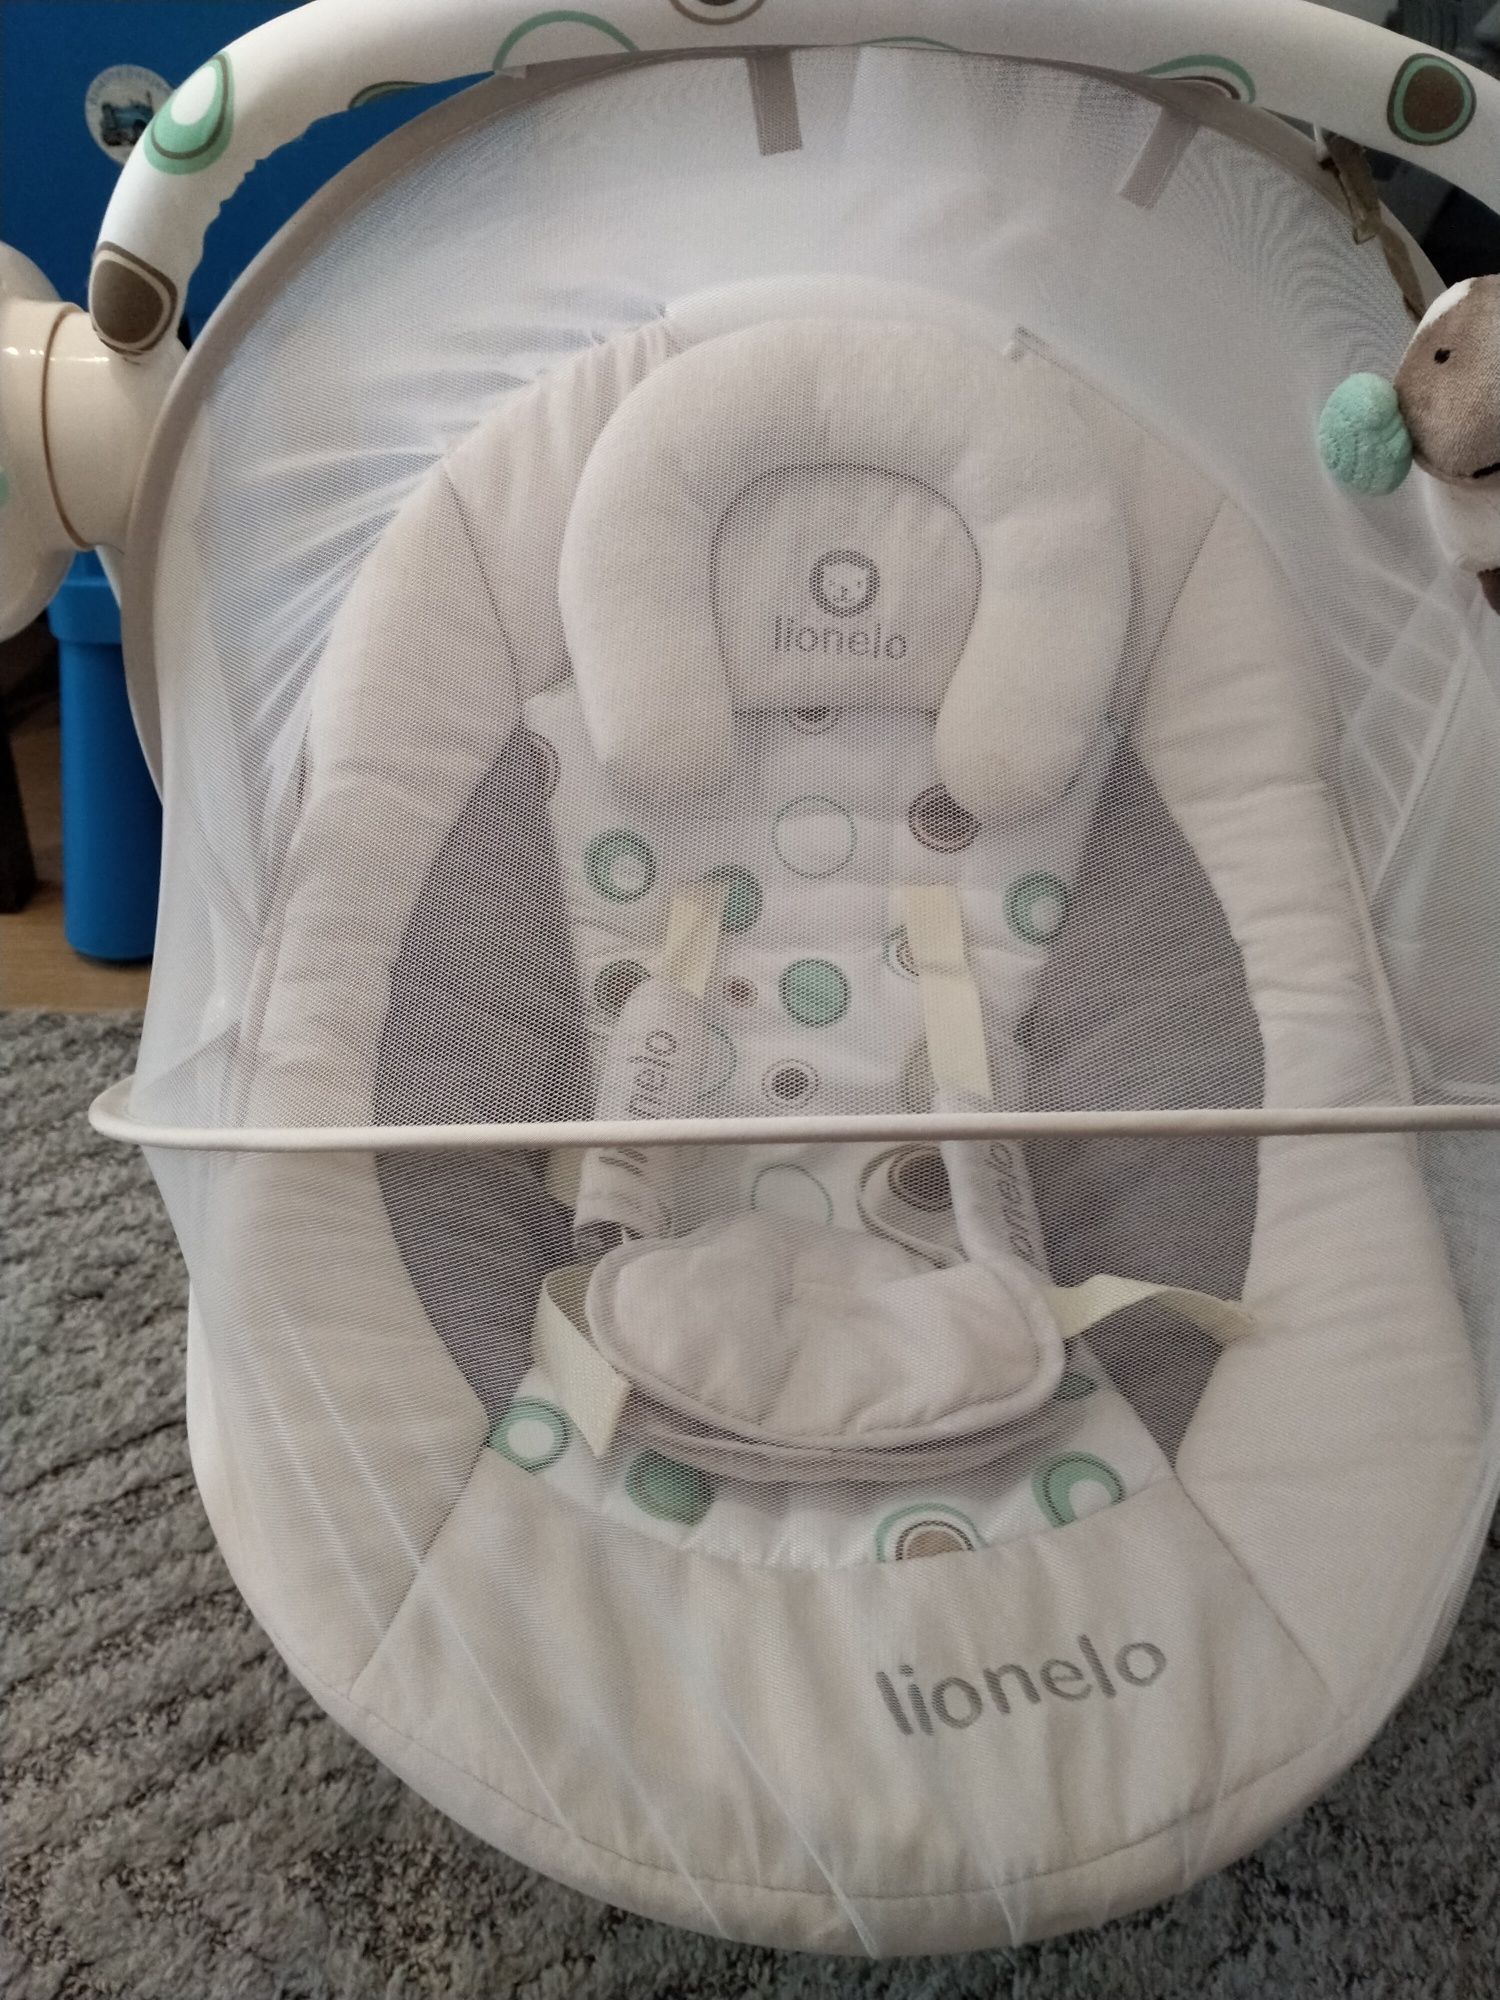 Lionelo huśtawka, leżaczek dla niemowląt.